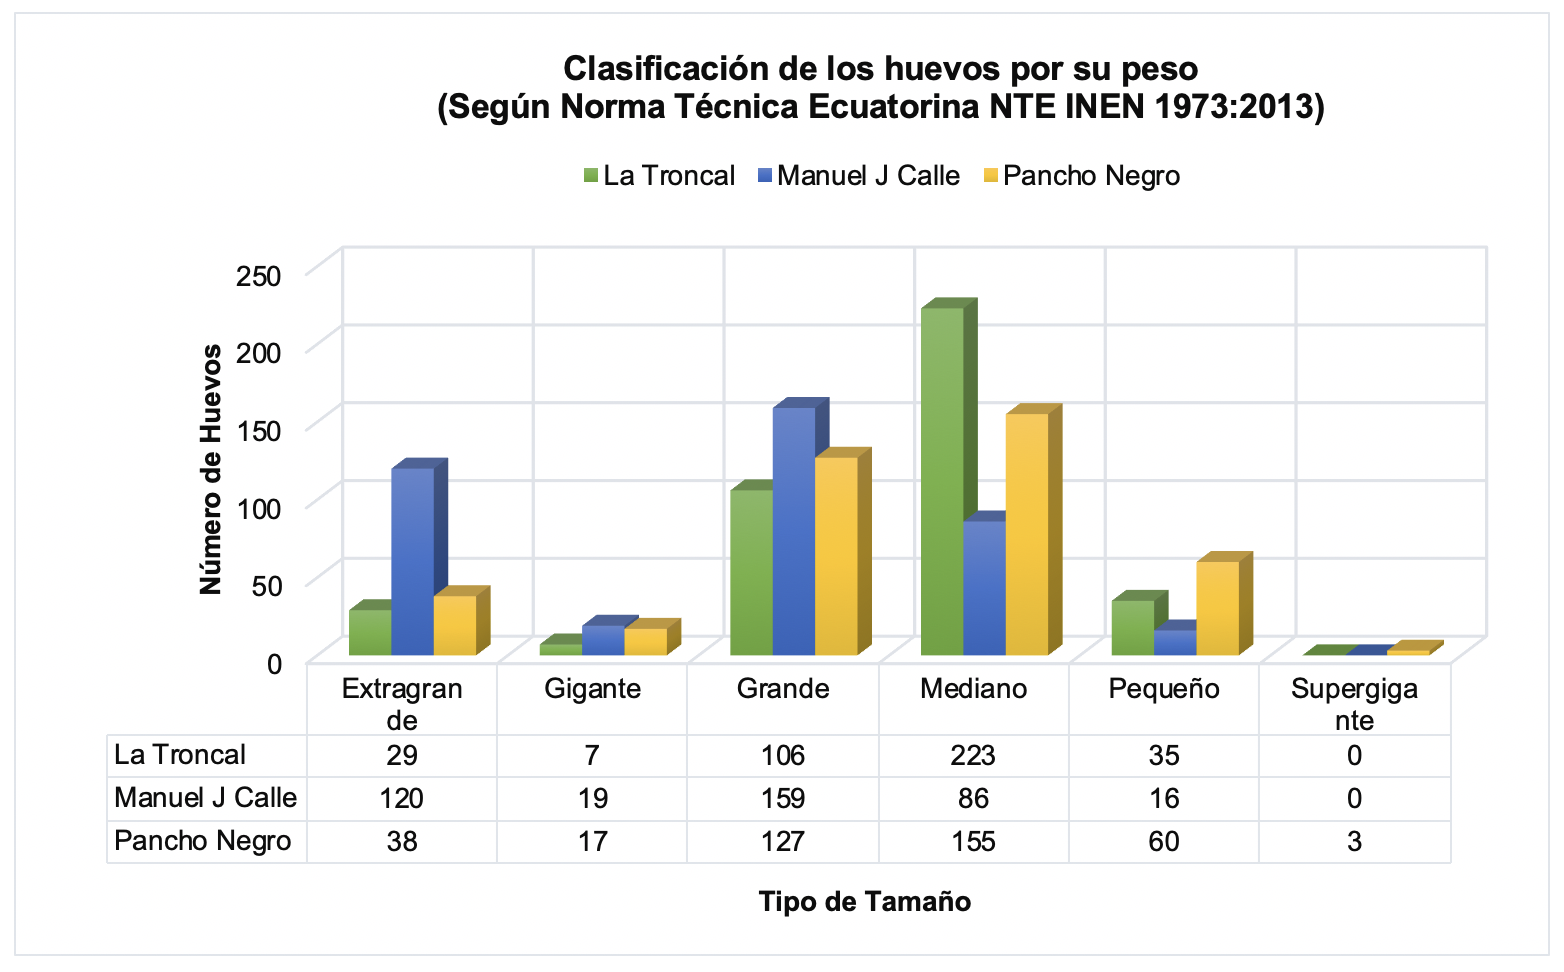 Clasificación de los
huevos criollos según Norma Técnica Ecuatoriana NTE INEN 1973:2013, por
parroquias del cantón La Troncal.